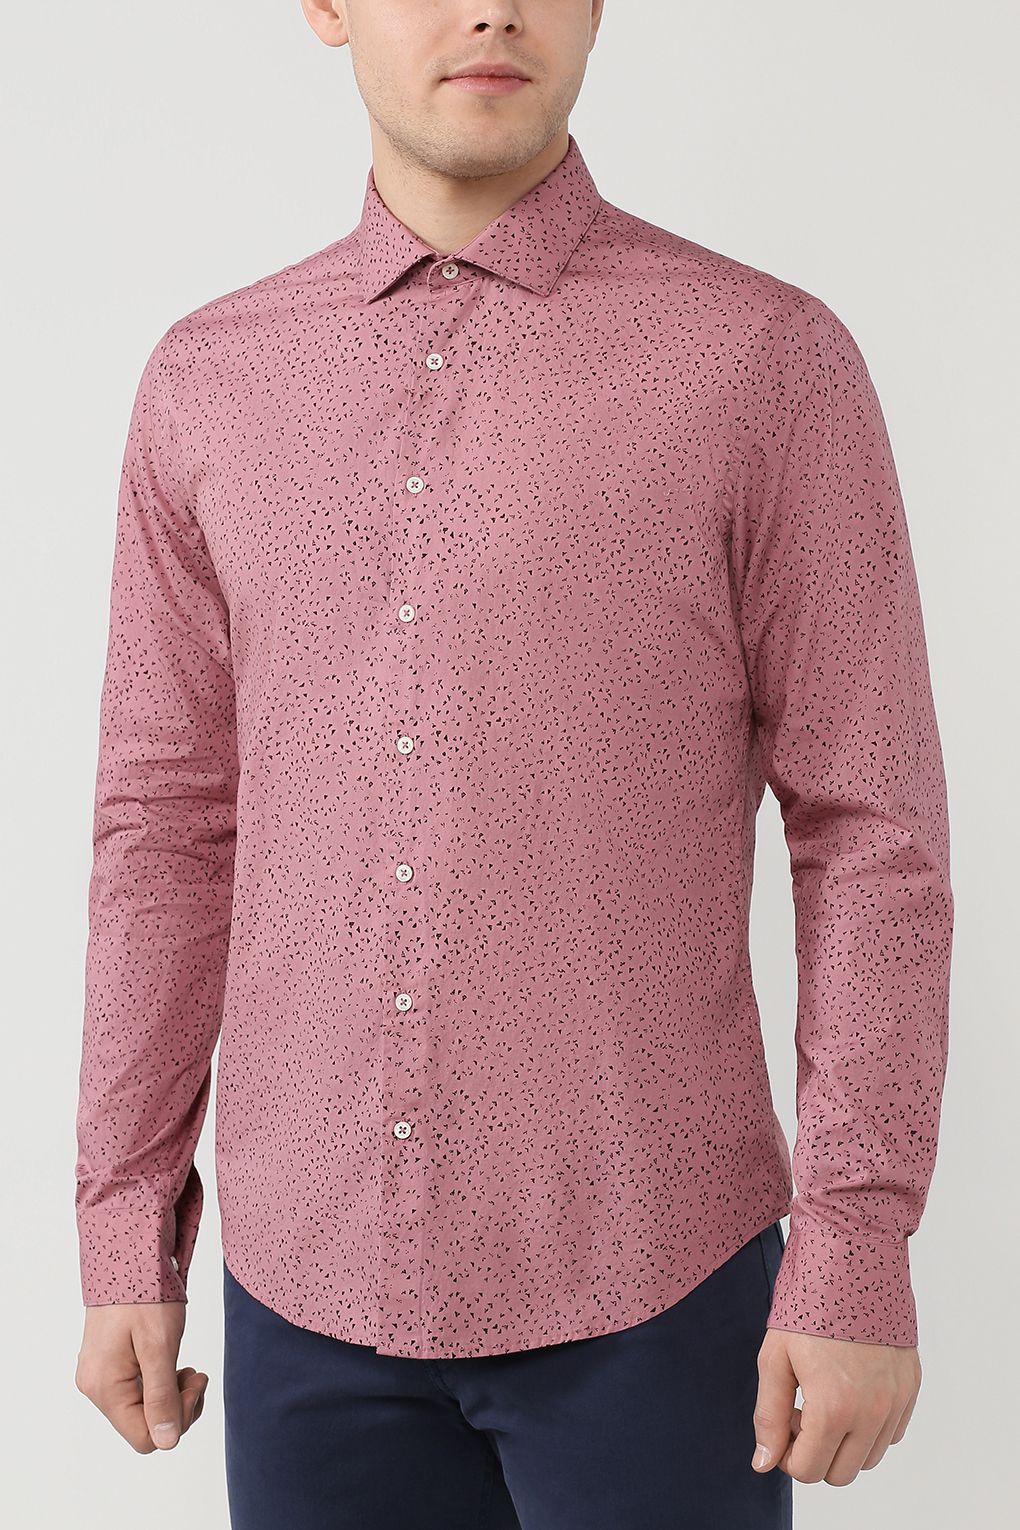 Рубашка мужская Construe 2004 CAMDEN розовая XL